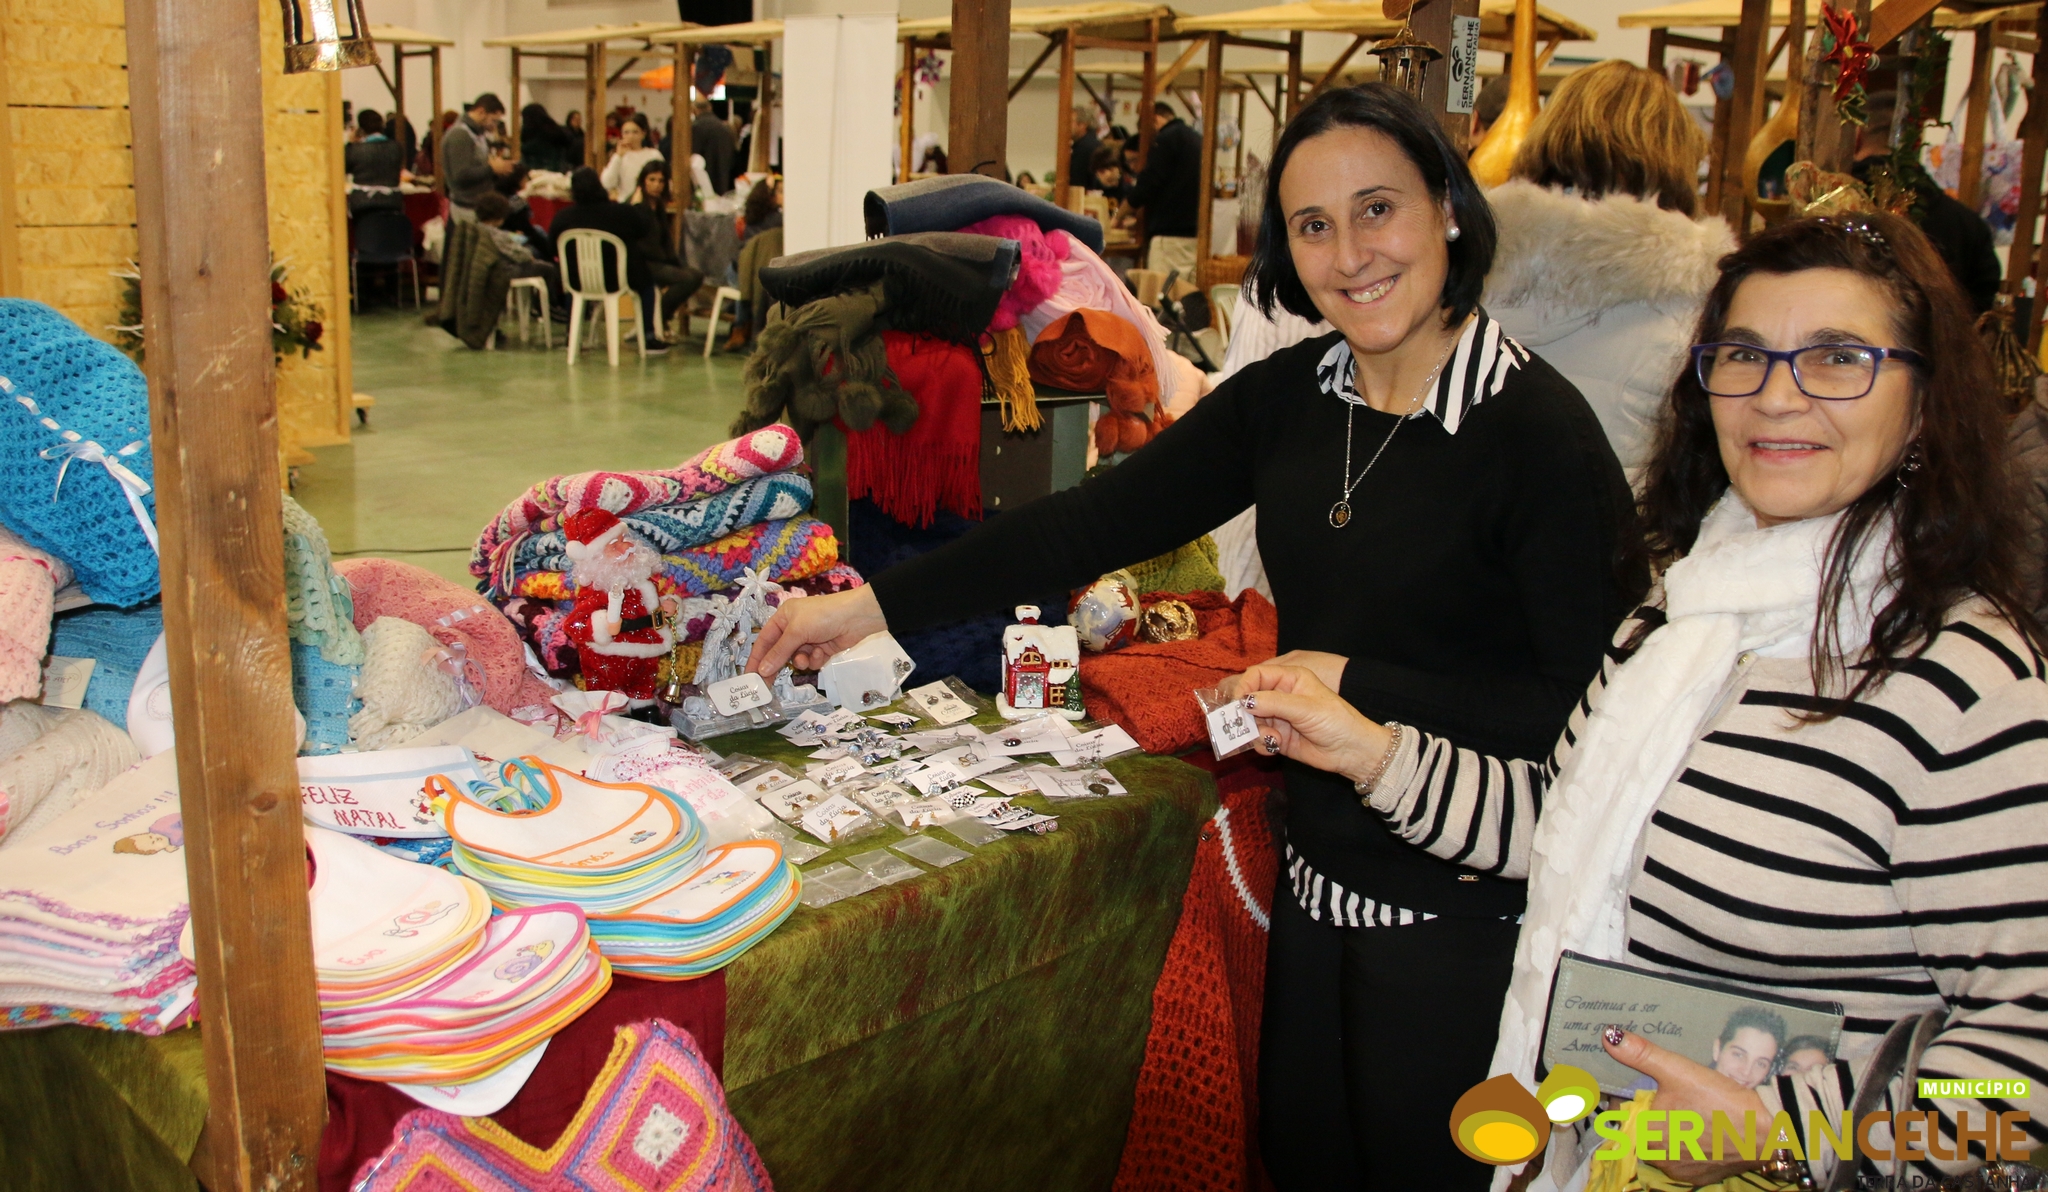 Mercado de natal trouxe cor, sabor e a magia natalícia ao expo salão